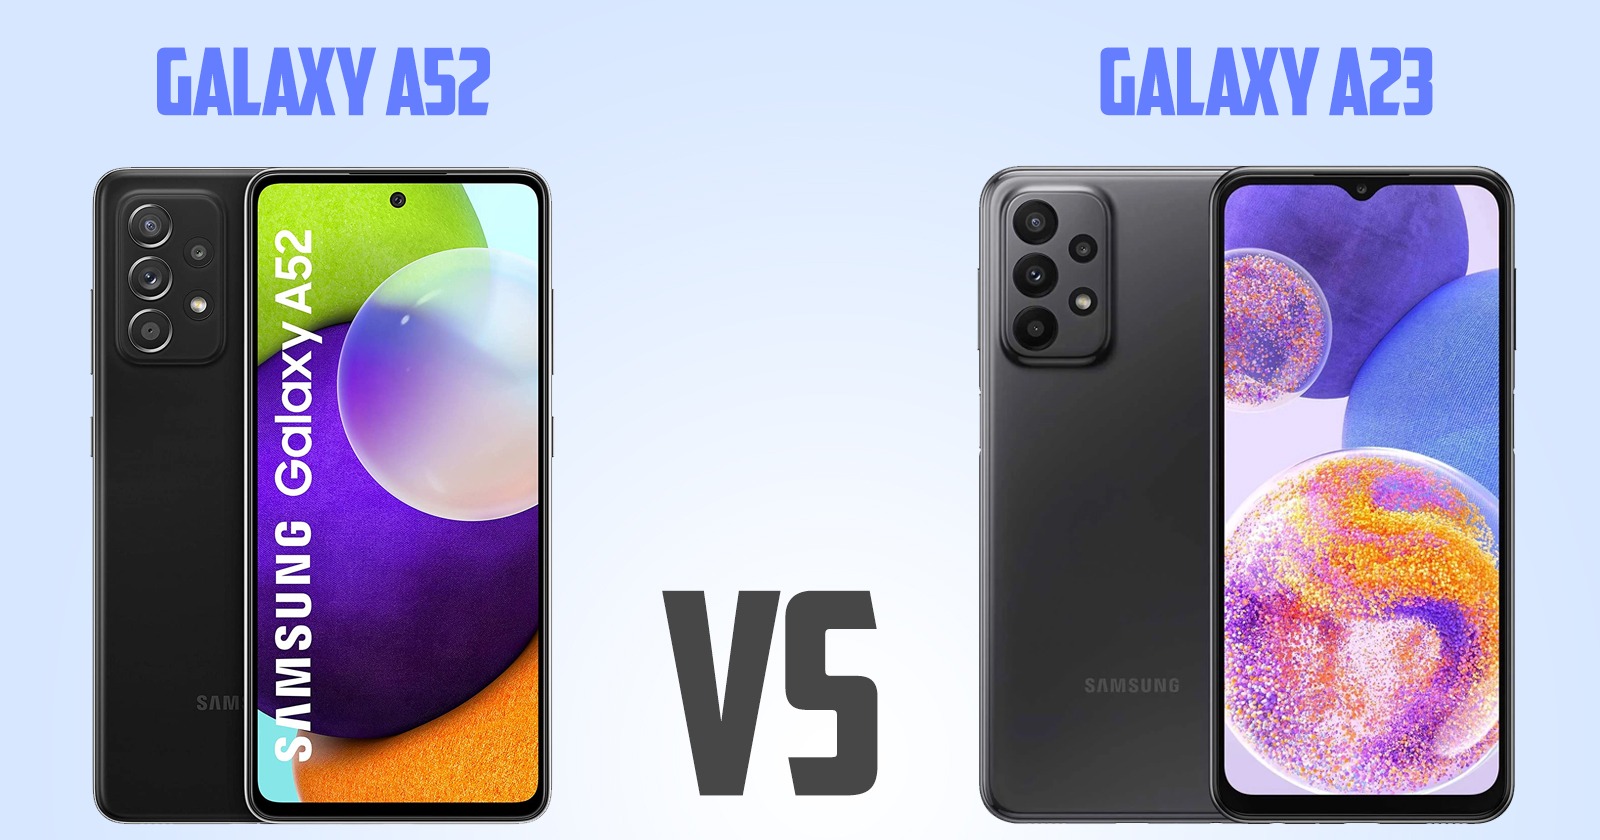 Samsung Galaxy A51 vs Samsung Galaxy A23